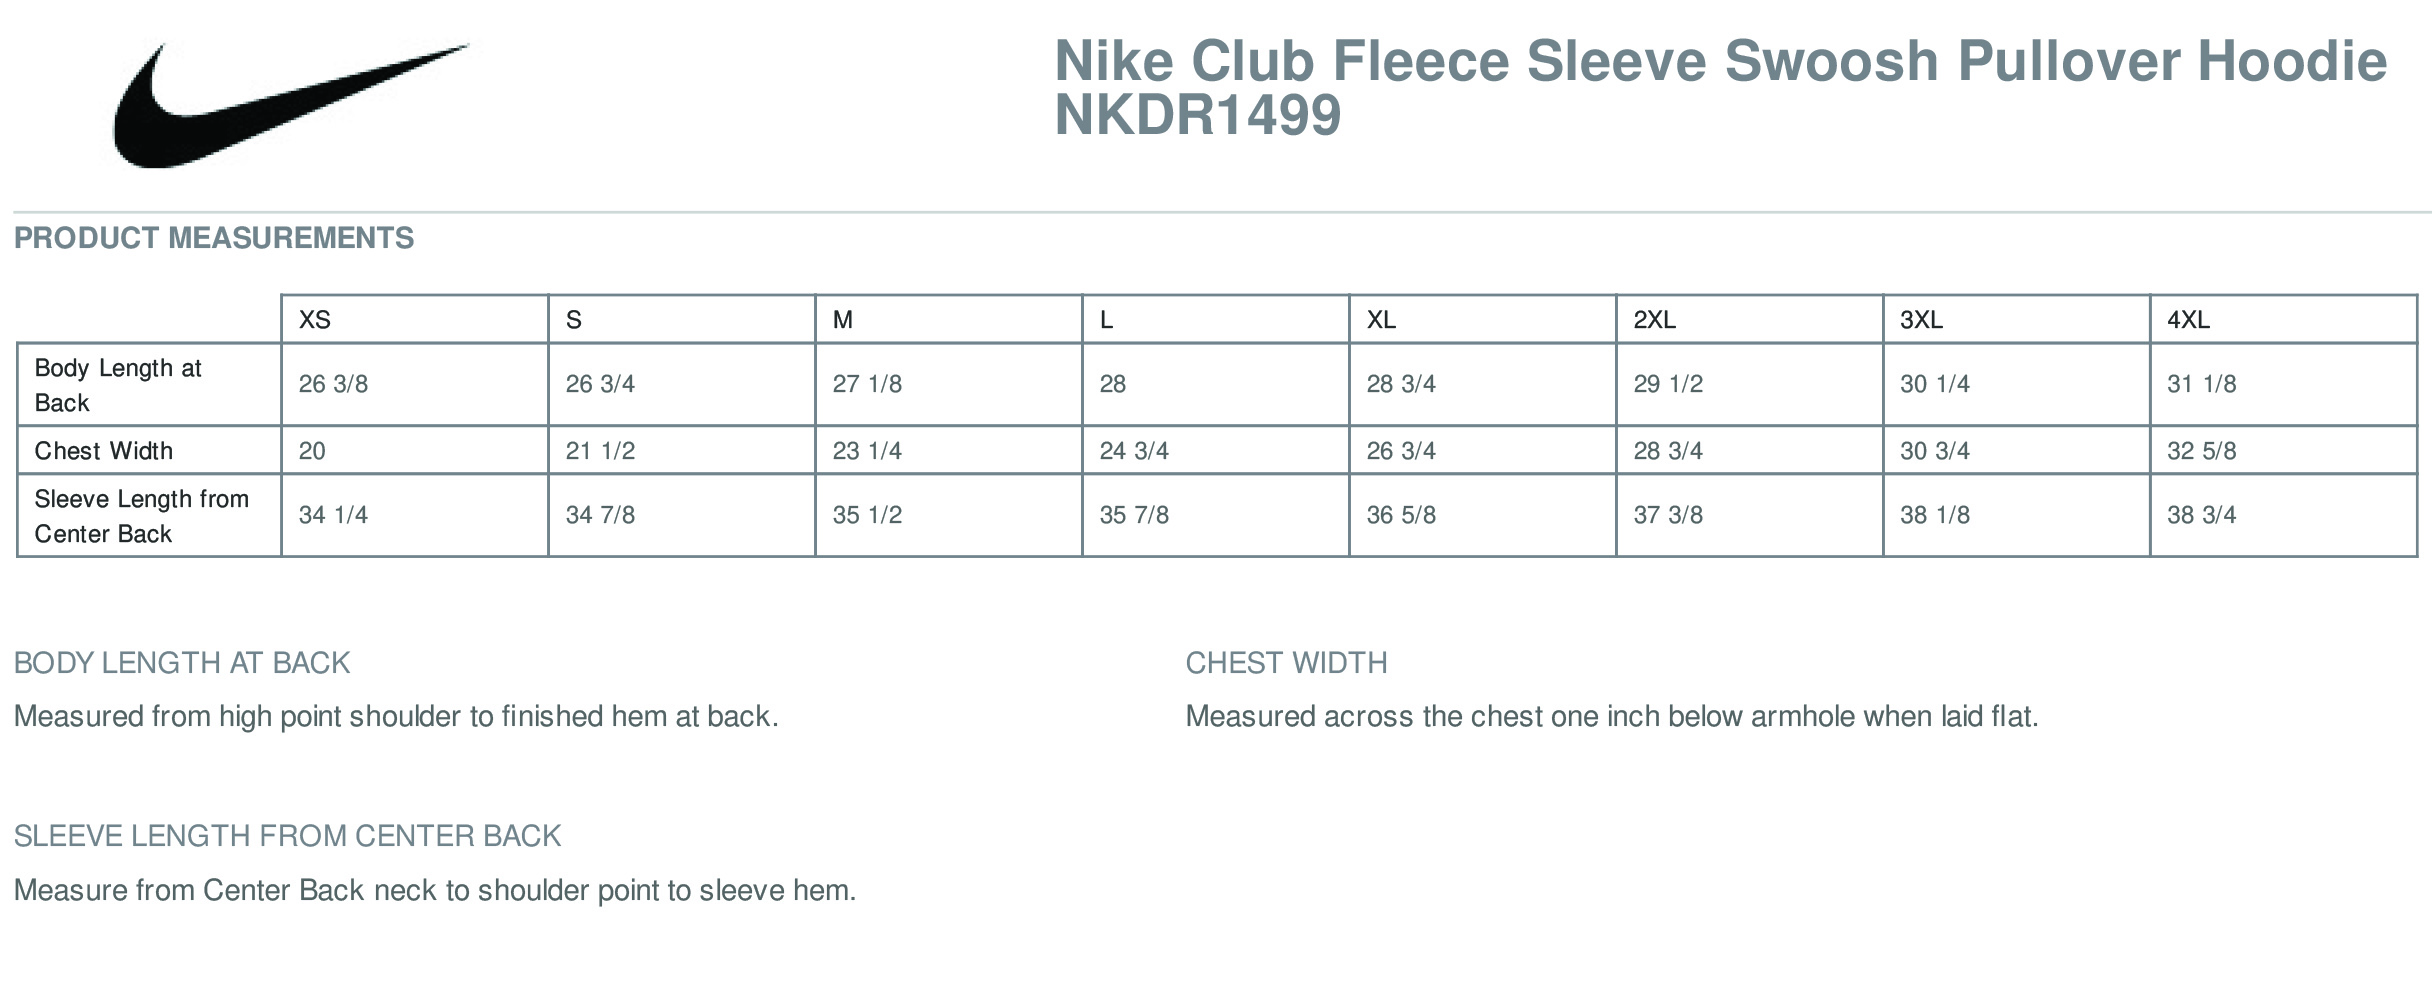 Black Nike Club Fleece Pullover Hoodie 3